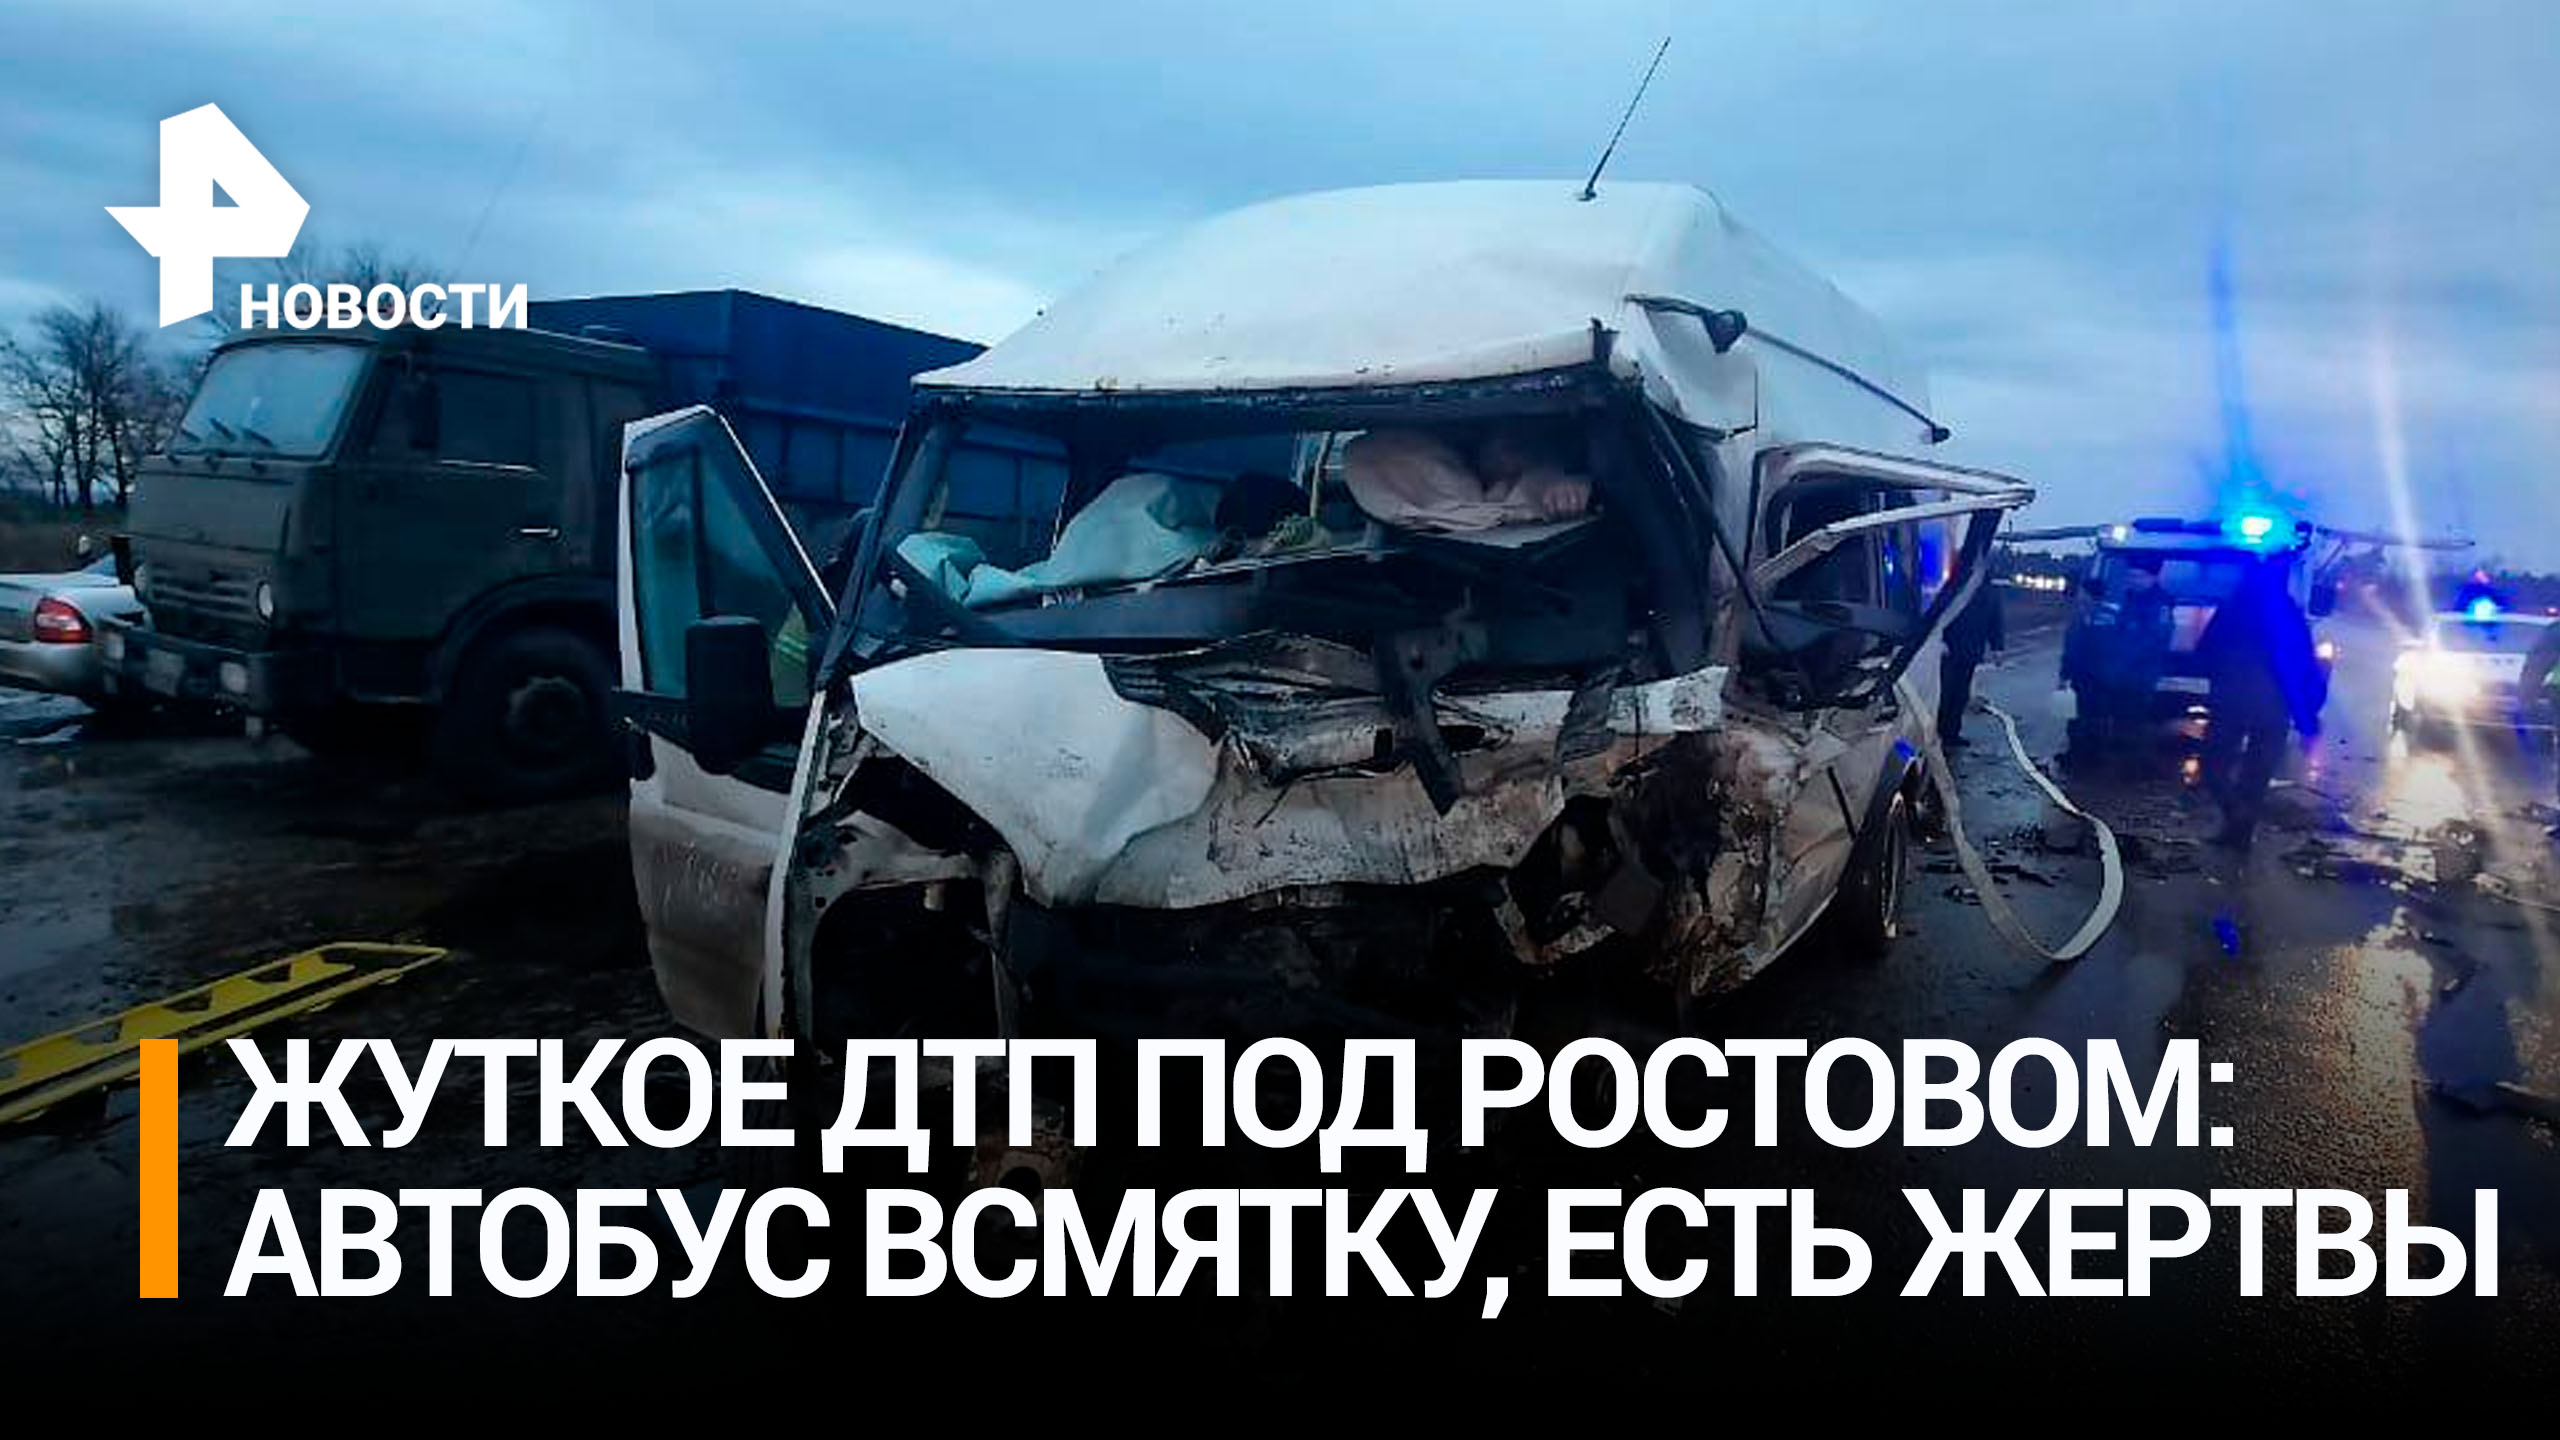 Четверо погибли: страшное ДТП с участием микроавтобуса и легковушки произошло в Ростовской области